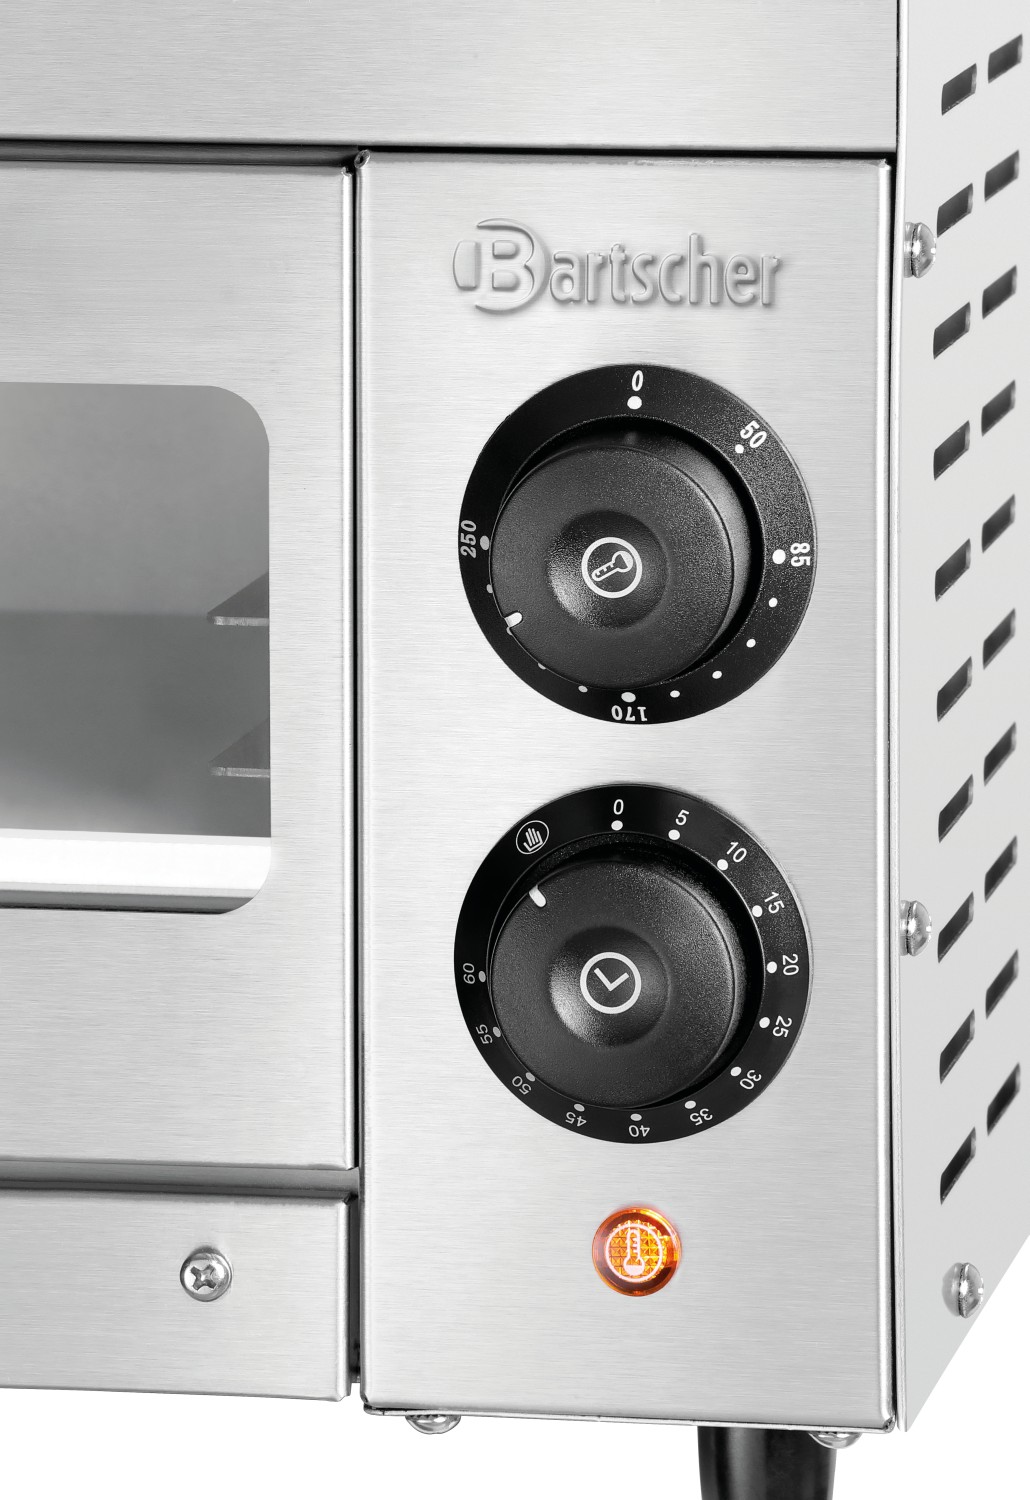  Bartscher Pizza oven ST340 